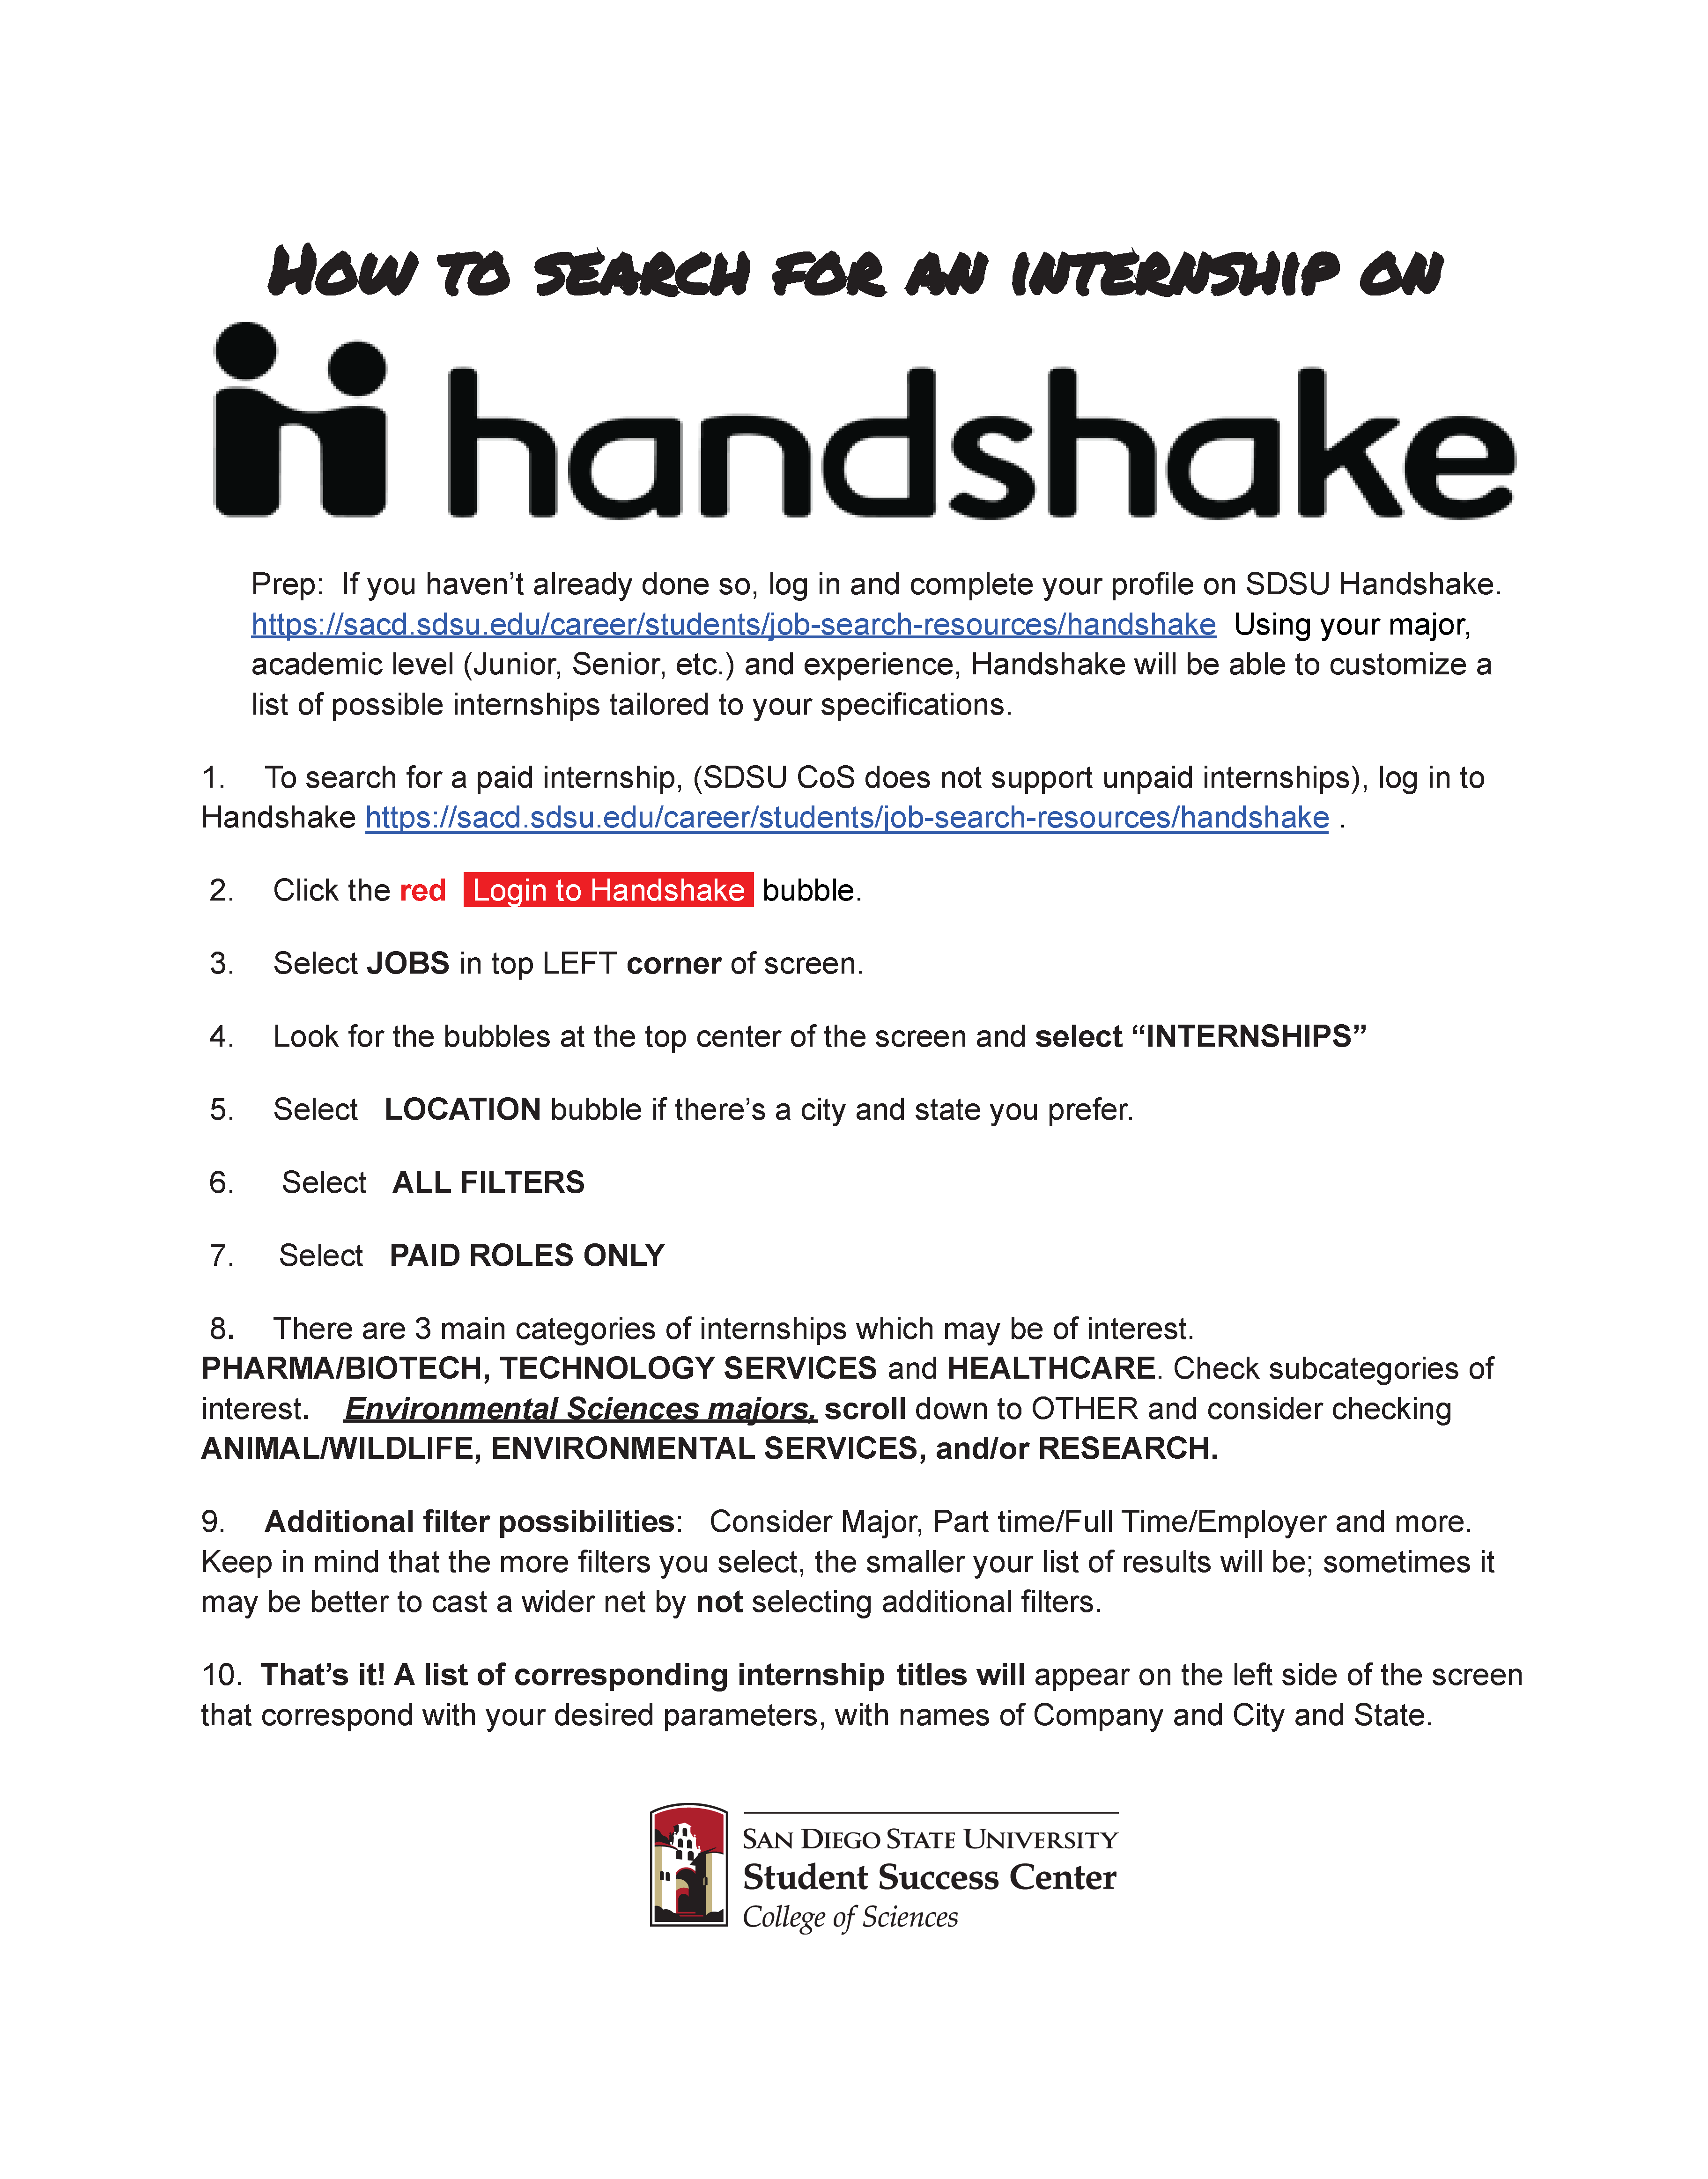 Handshake Instructions